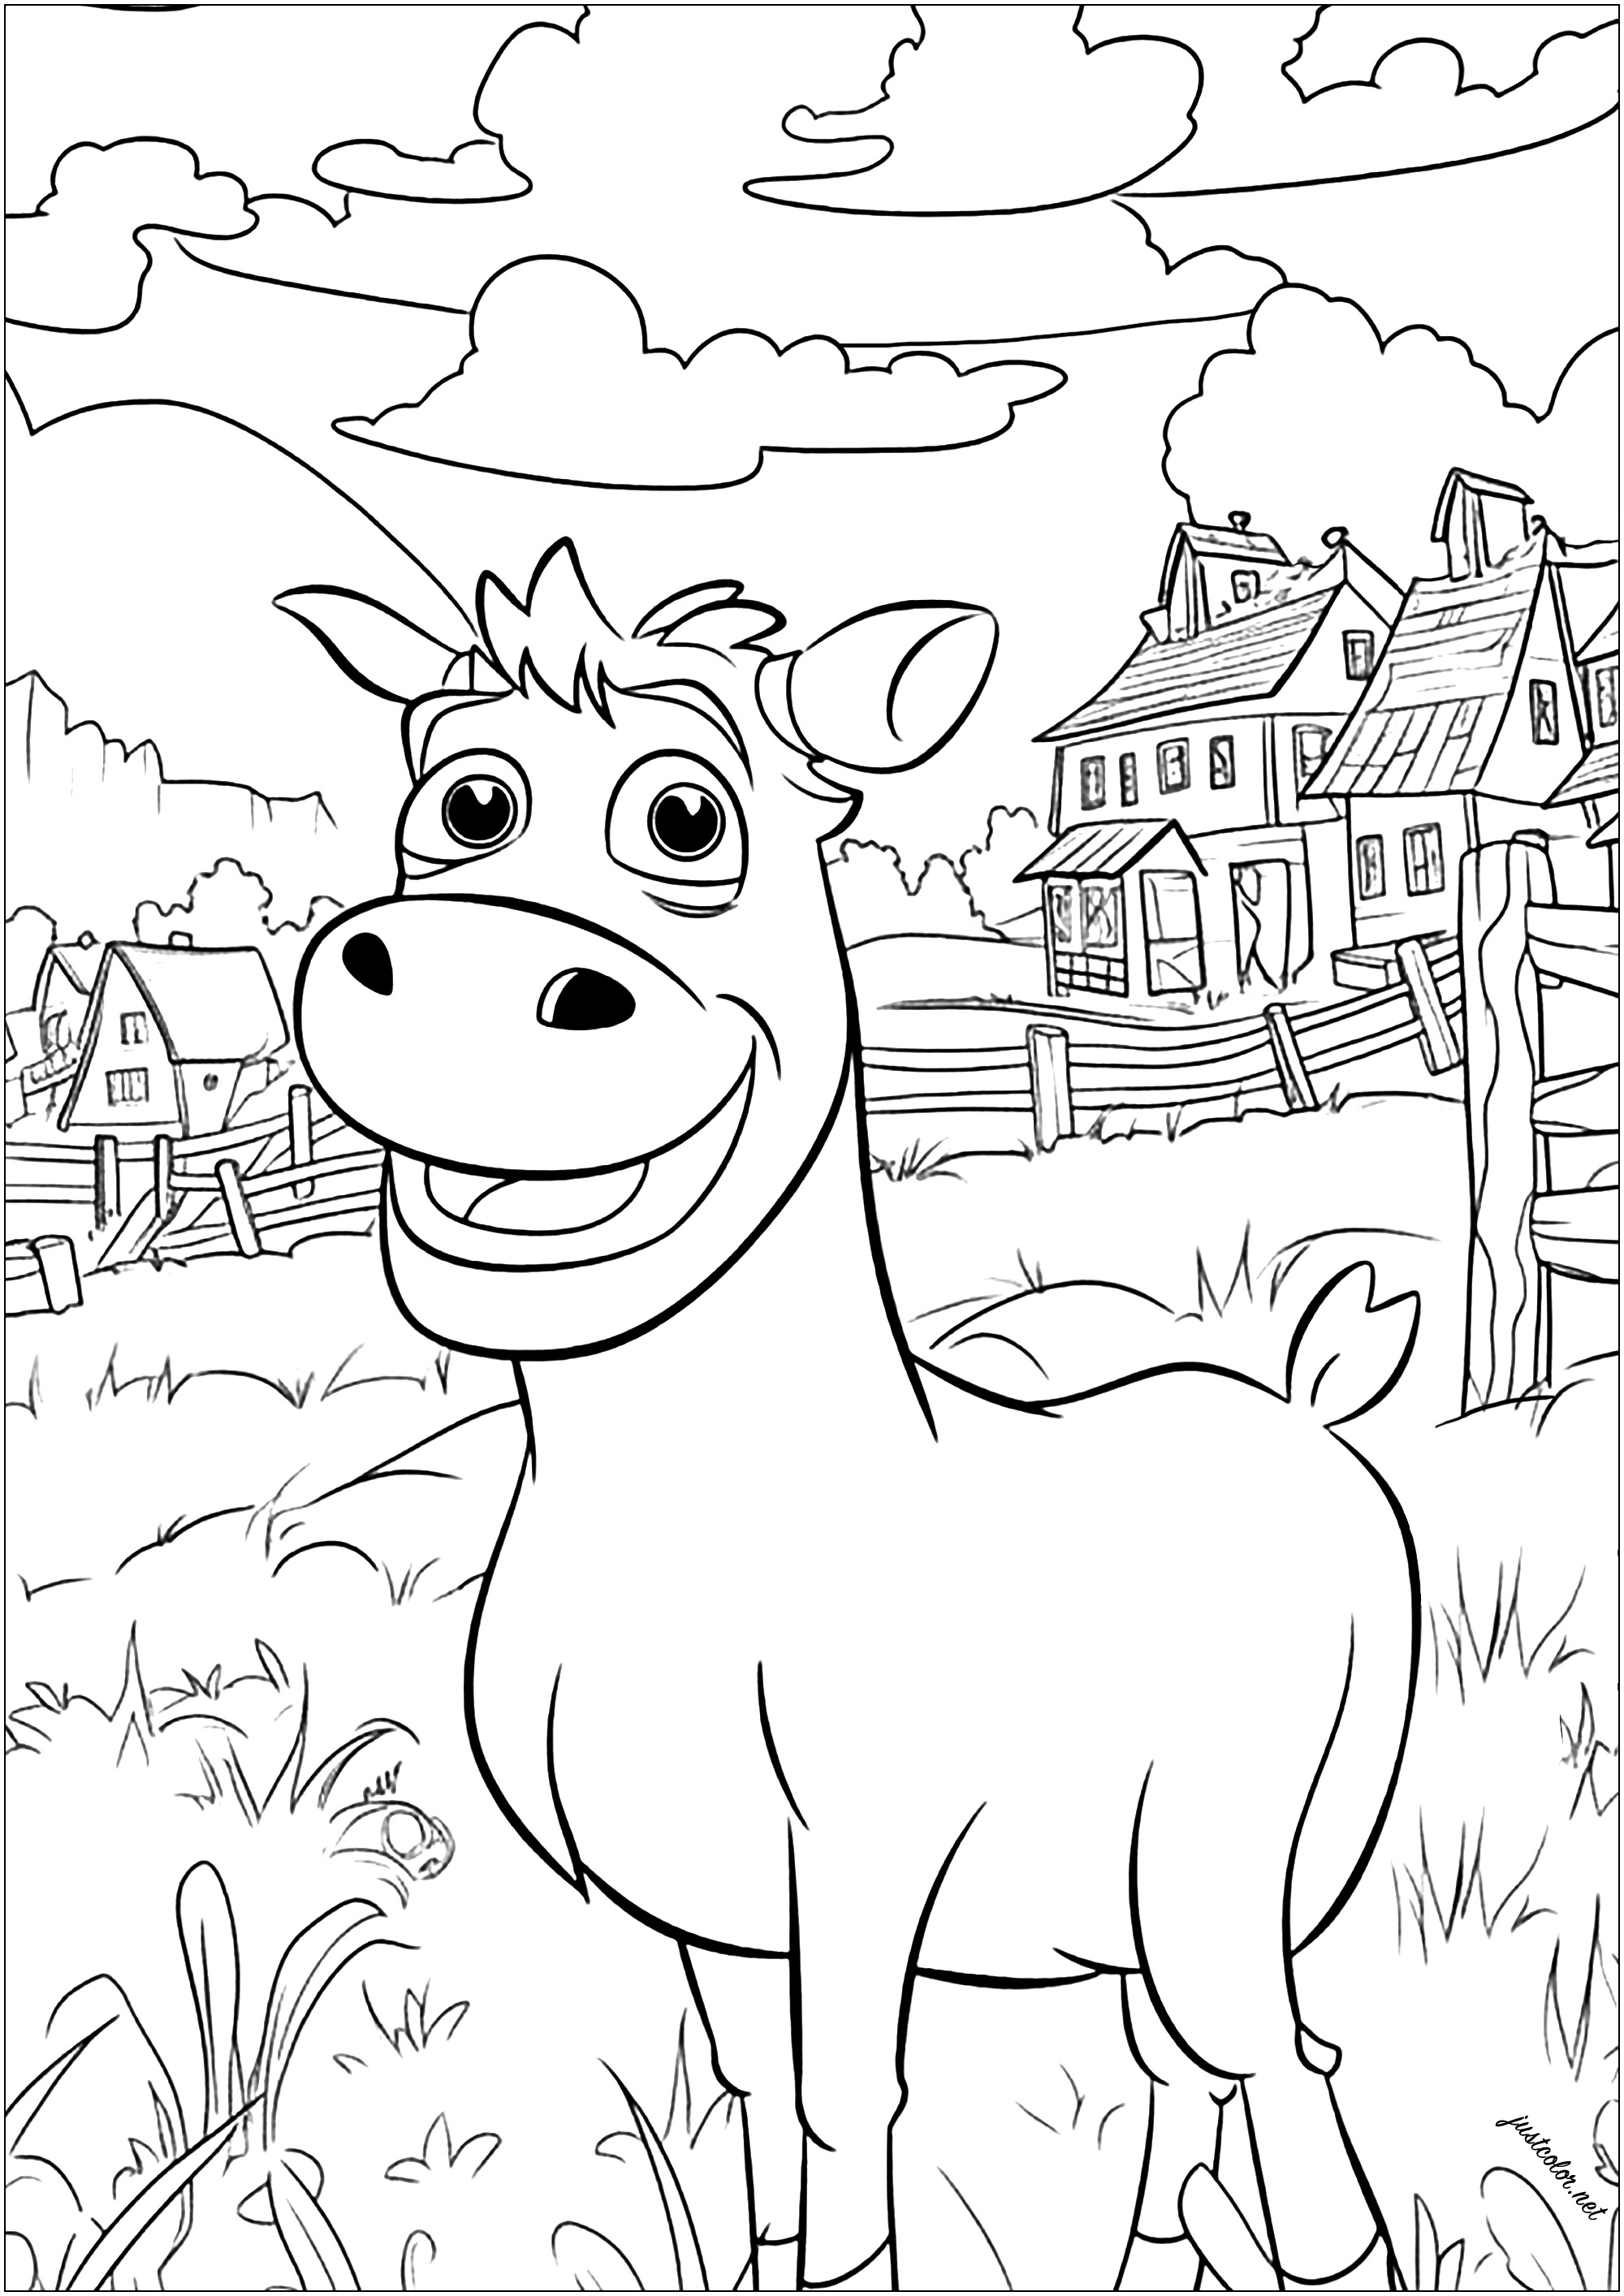 Hübsche Kuh zum Ausmalen. Diese freundliche Kuh steht auf ihrer Wiese mit hohem Gras, mit Häusern und einem traditionellen Bauernhof im Hintergrund.